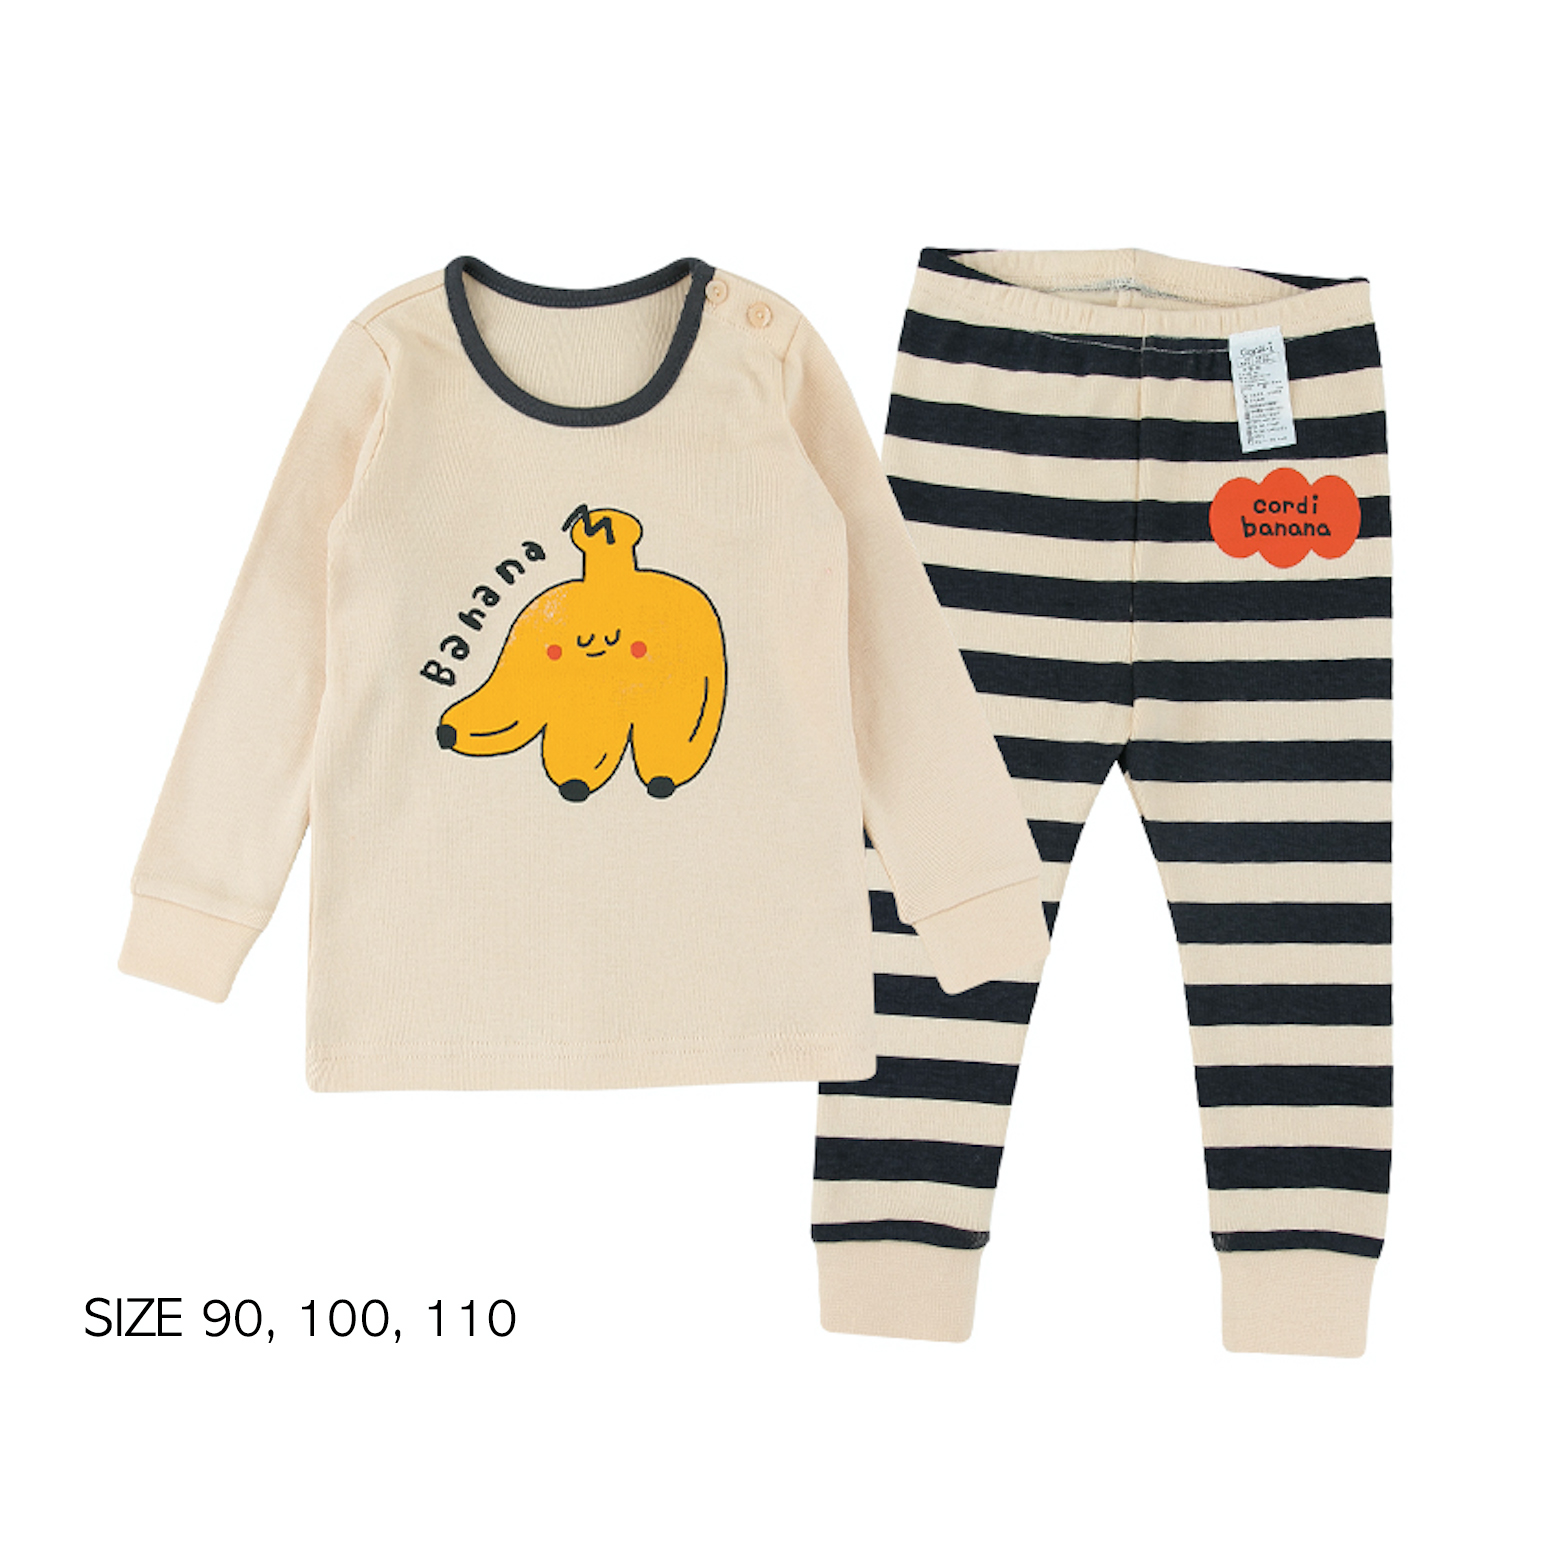 Woodland Winter Appliqué Kids 2-Piece Pajama Set 